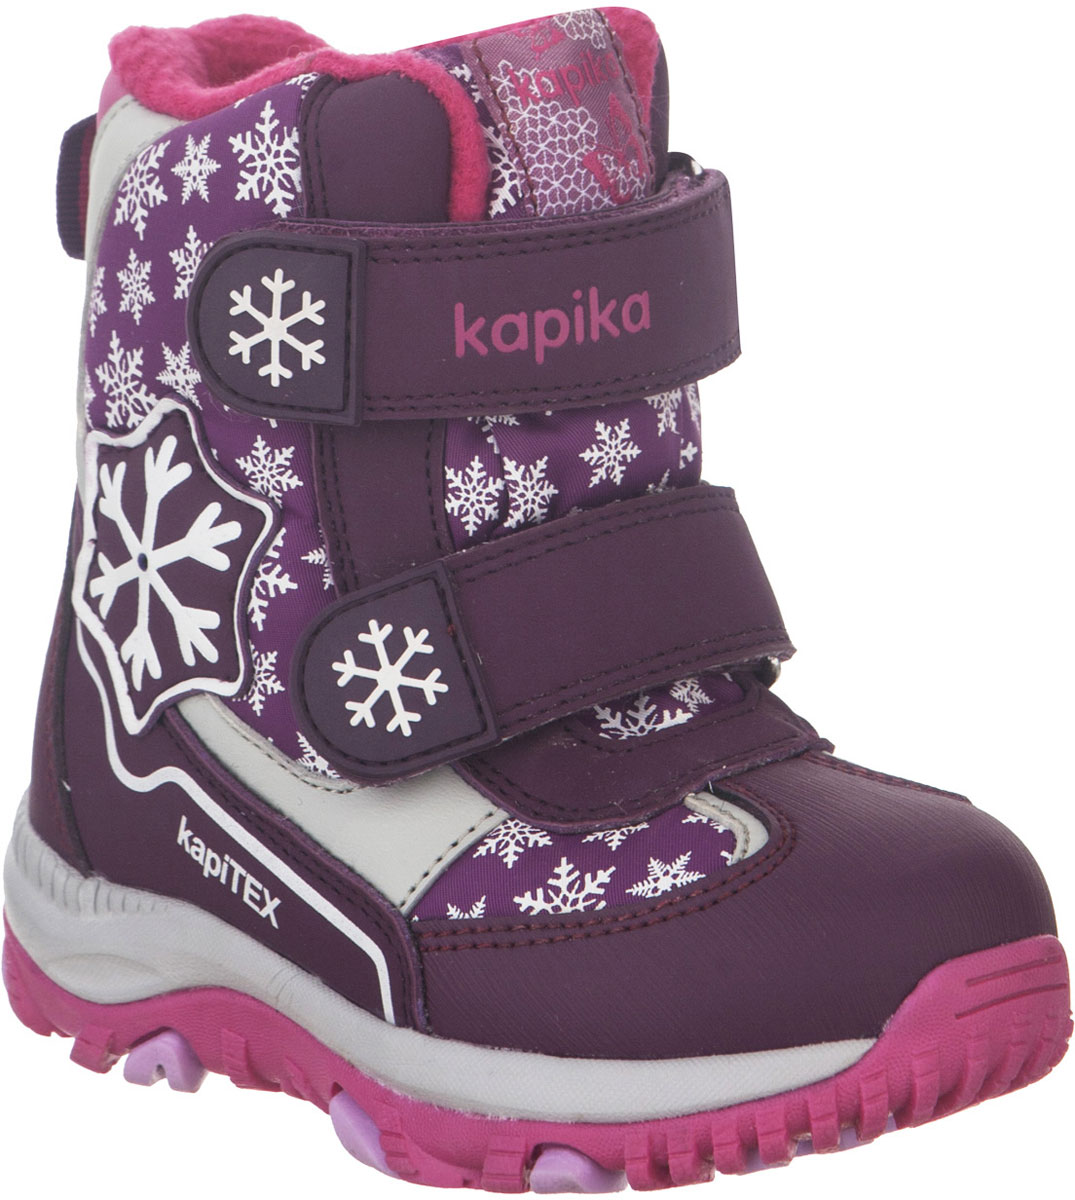 Ботинки для девочки Kapika, цвет: фиолетовый, фуксия. 41226-1. Размер 24